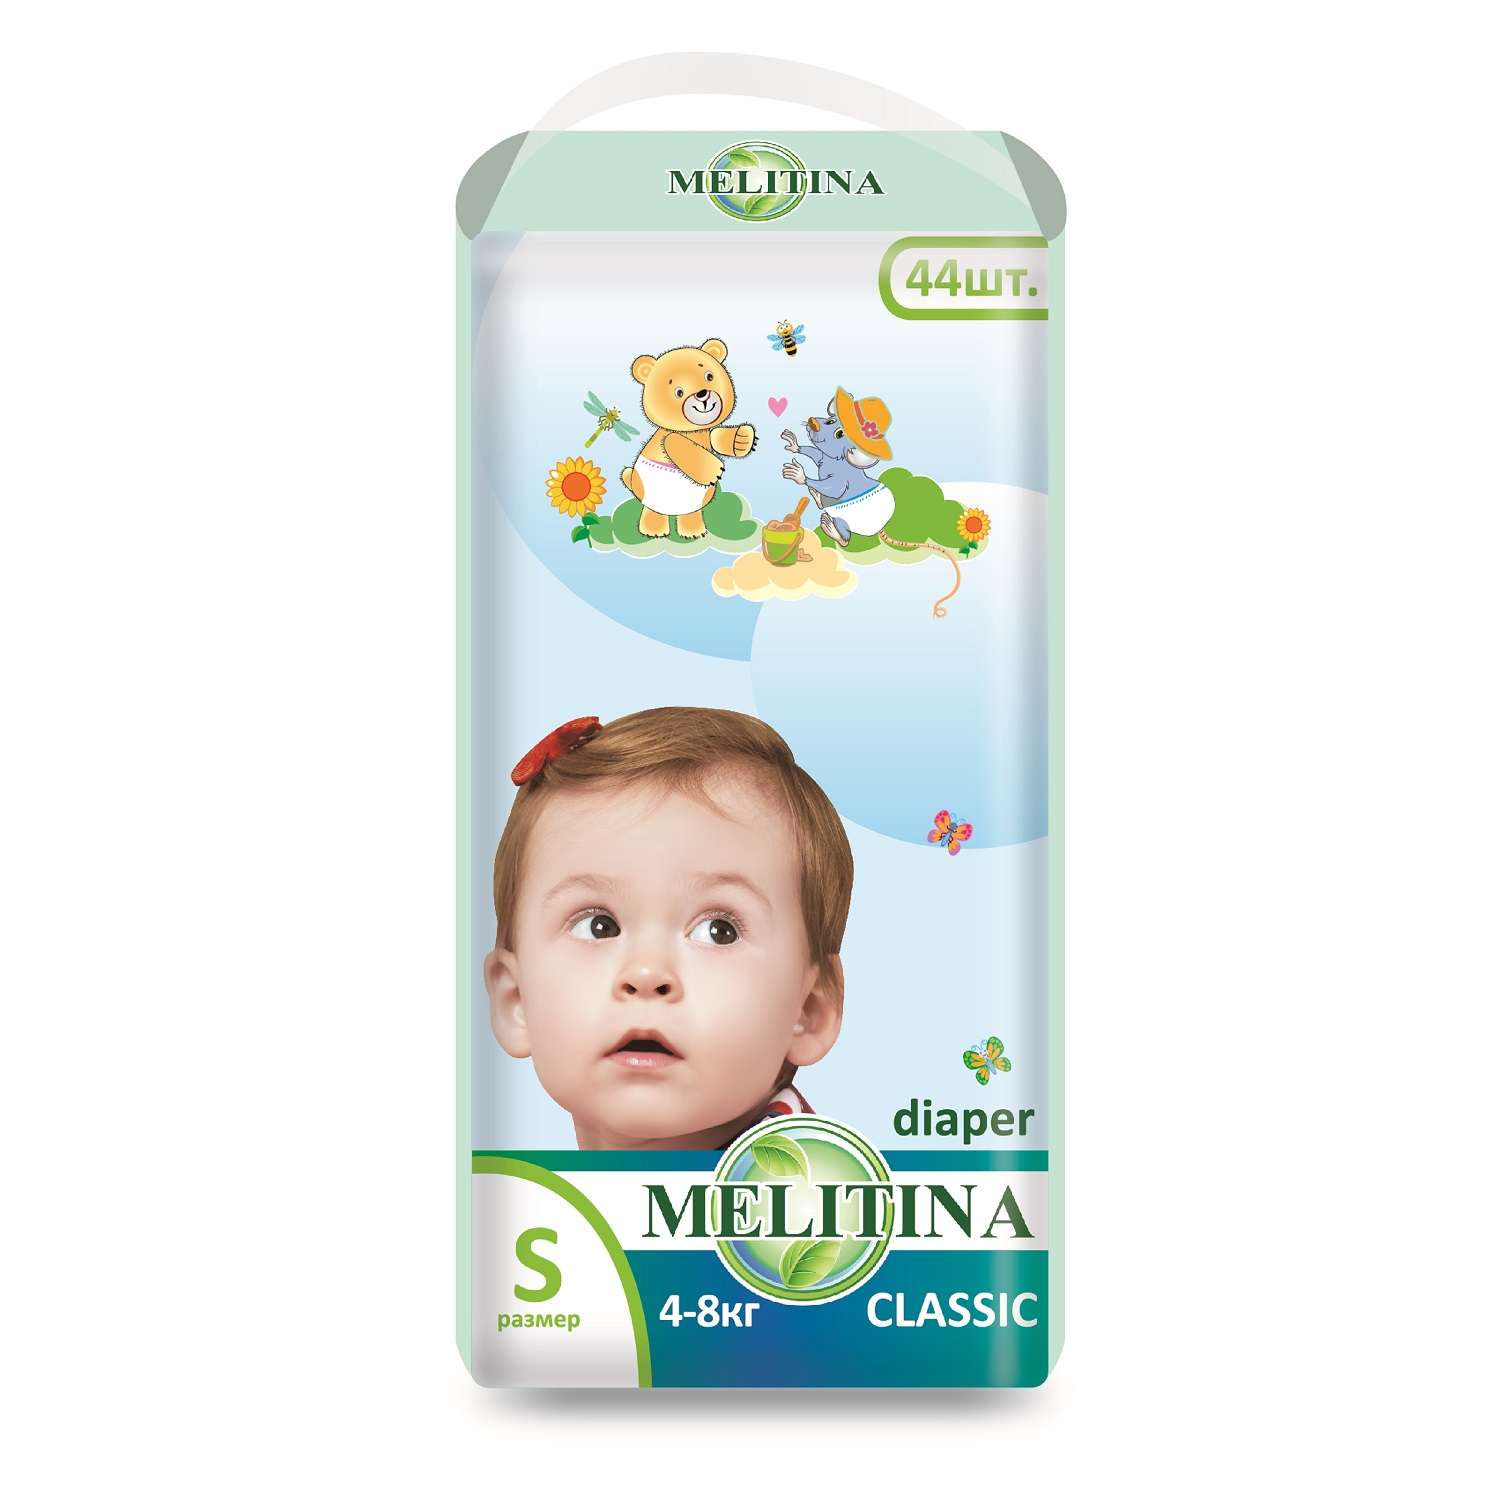 Подгузники Melitina для детей Classic размер S 4-8 кг 132 шт 50-8402 - фото 2